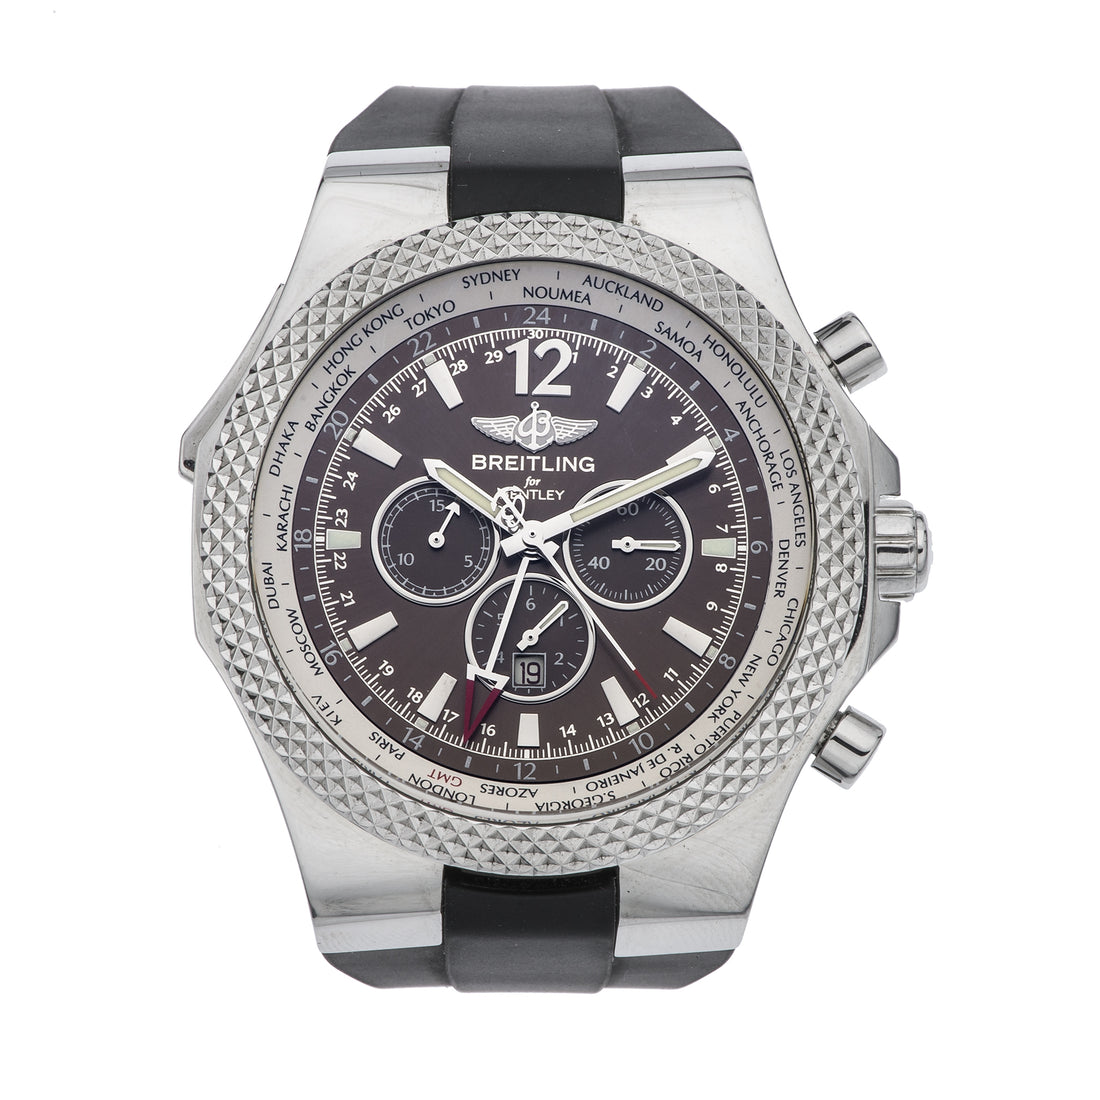 Reloj Breitling Breitling for Bentley Special Edition - GMT para Caballero 